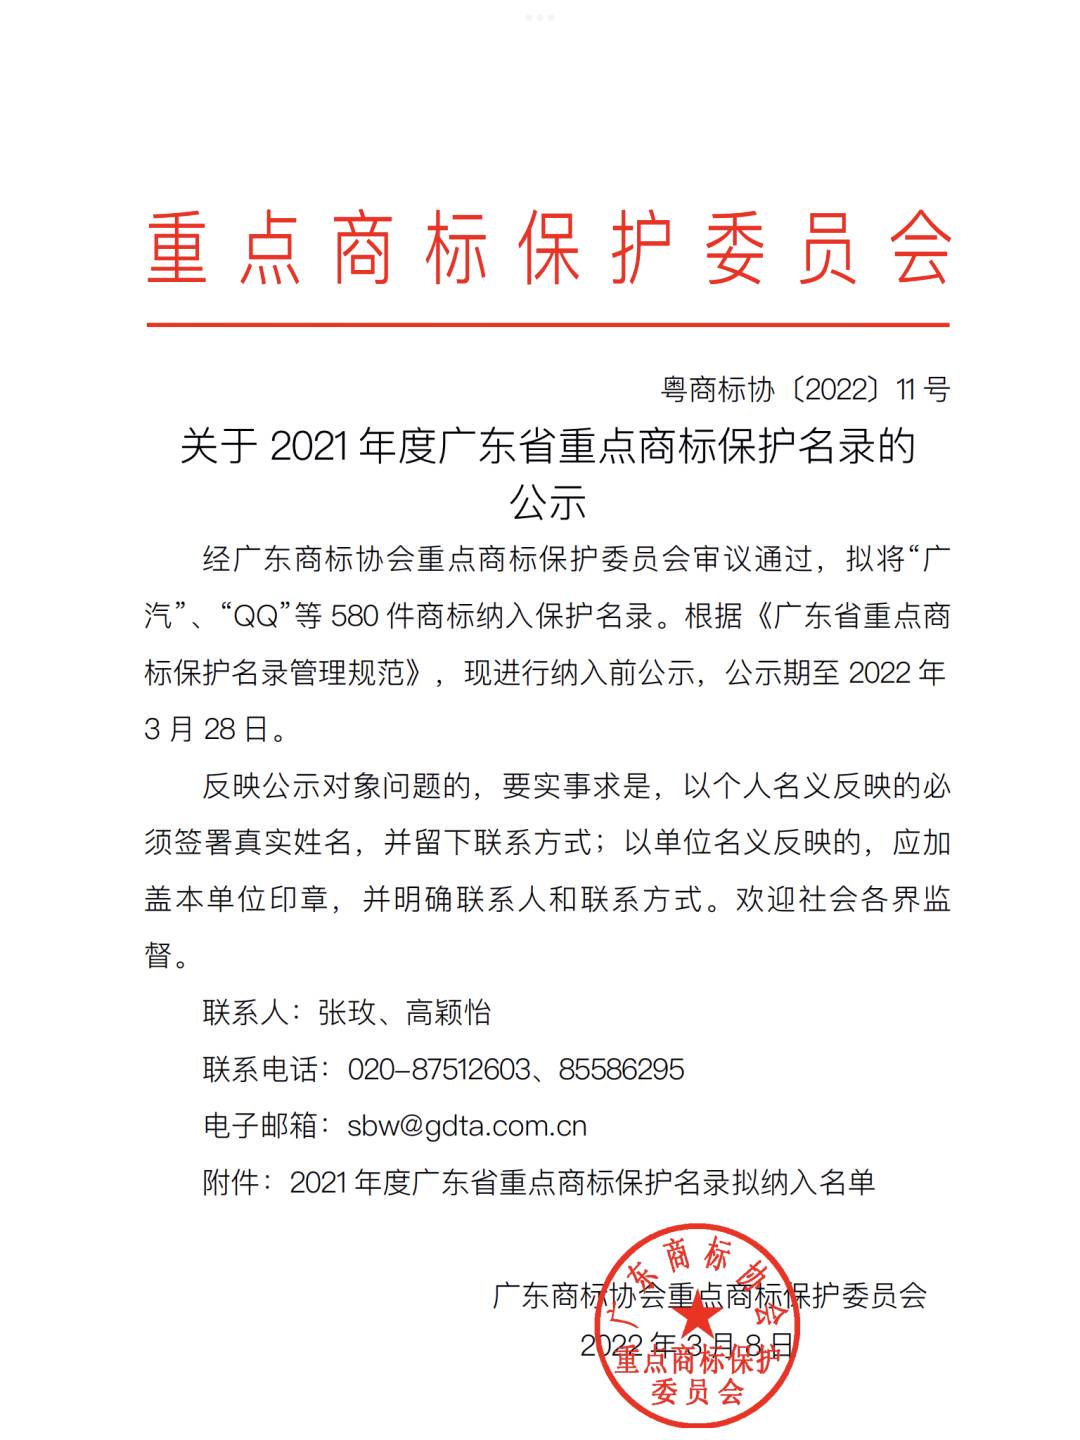 吉迩科技、麦克韦尔、悦刻被列入广东重点商标保护名录